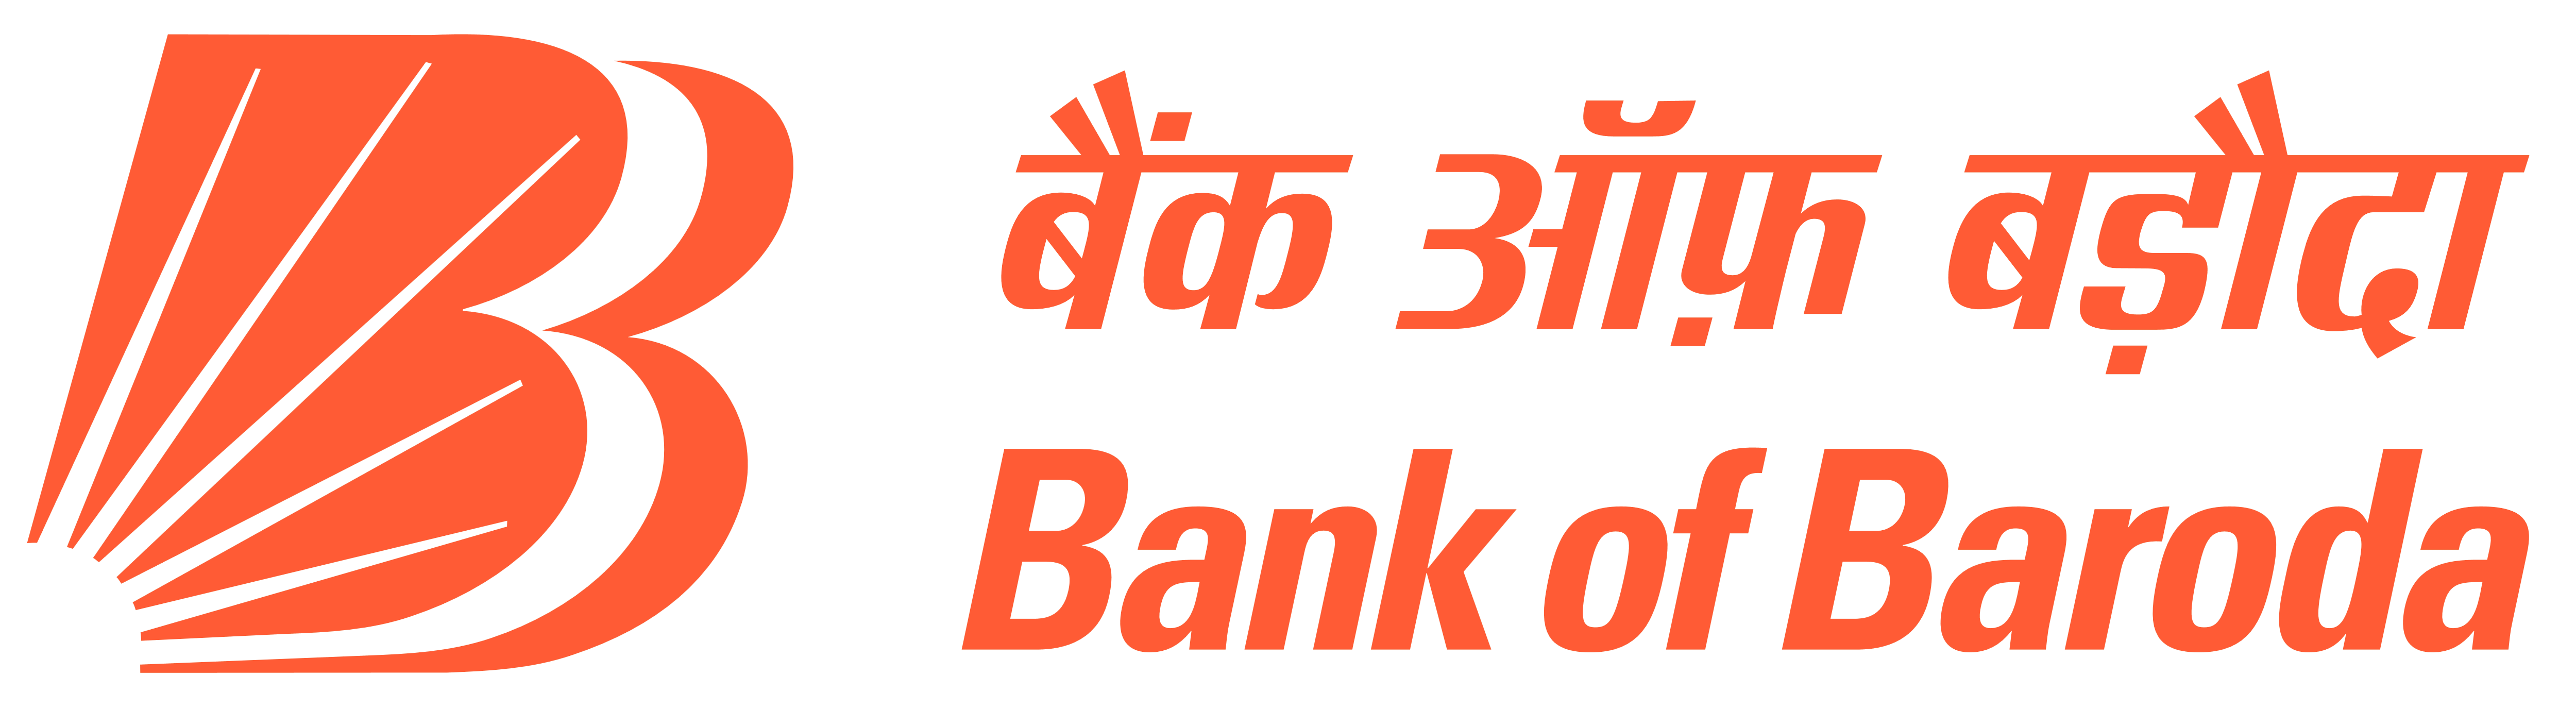 Bank Of Baroda Brand Logo